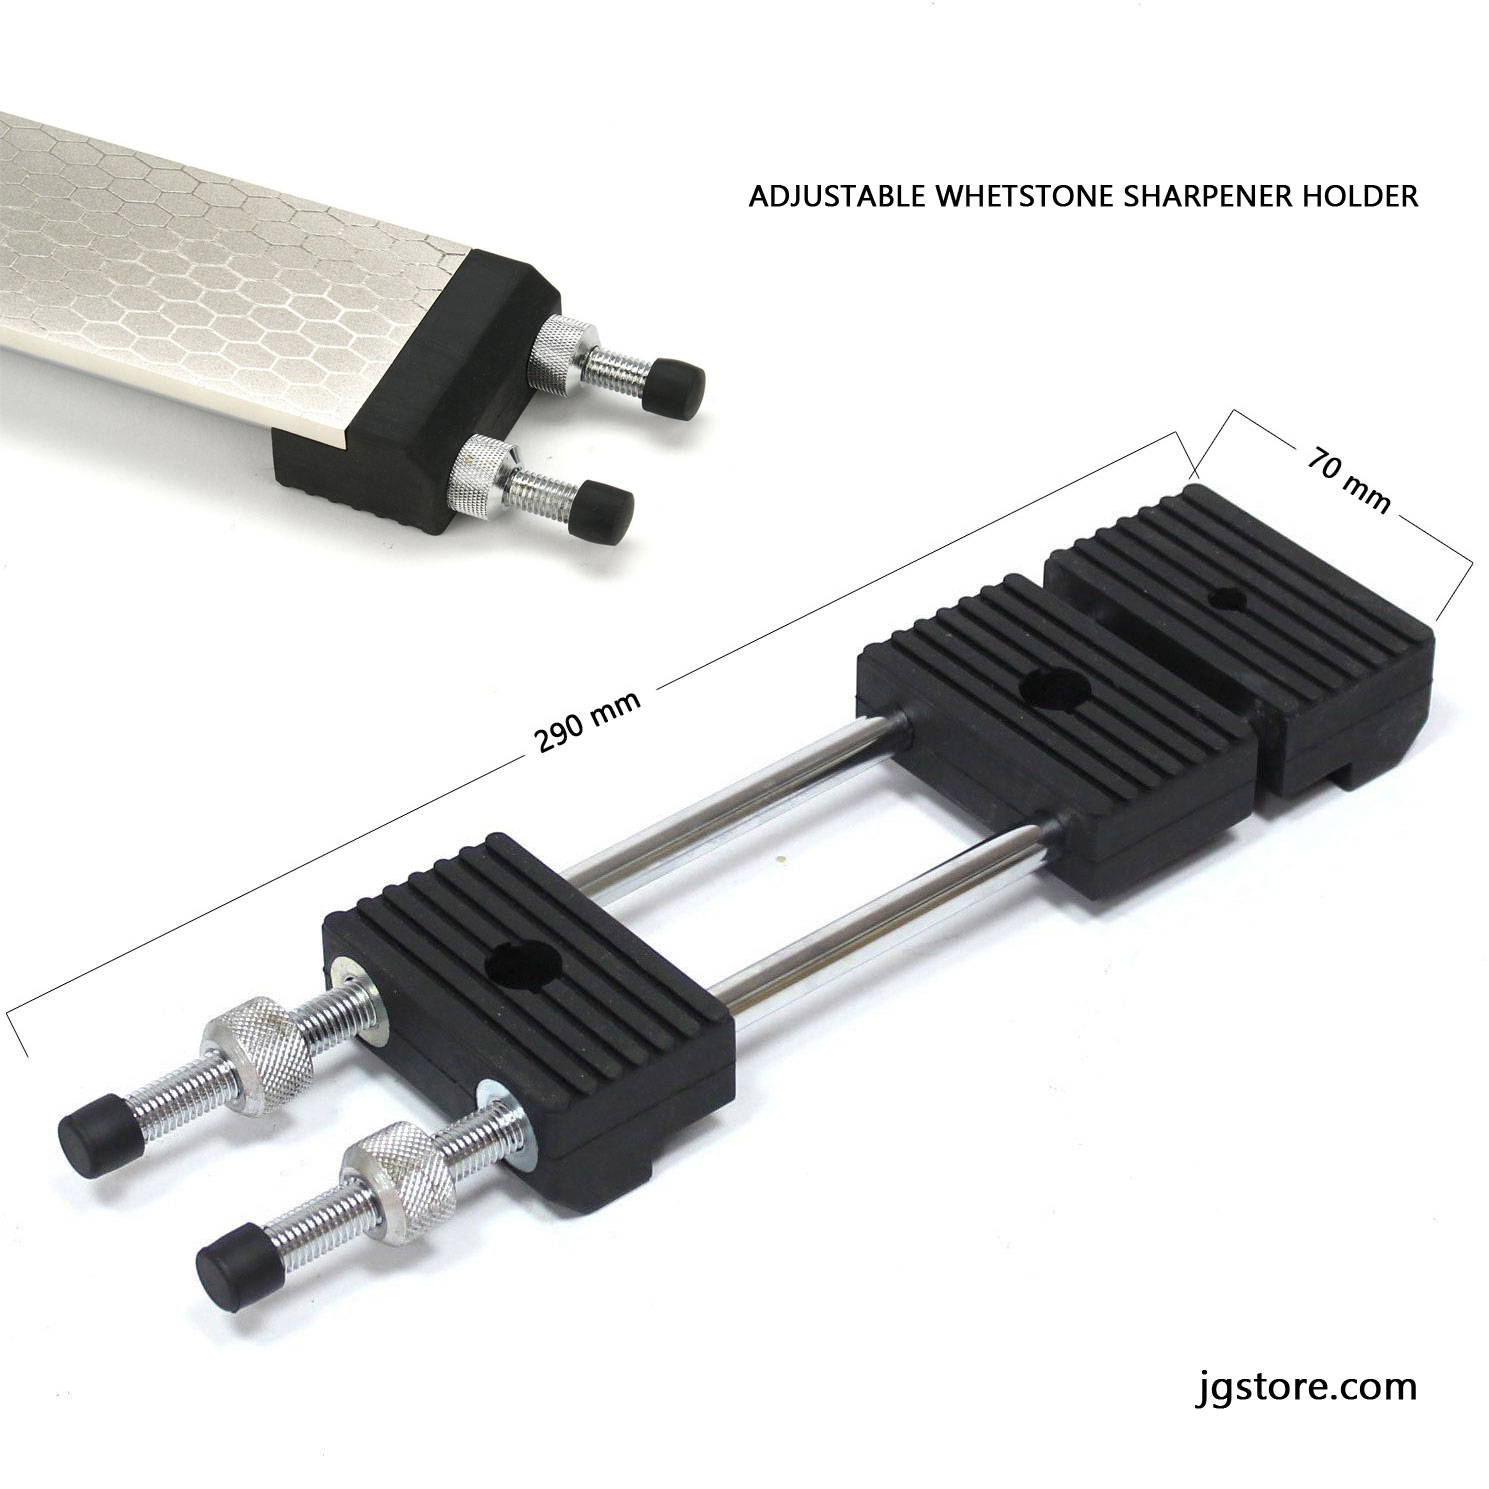 Adjustable Whetstone Sharpener Holder - Size